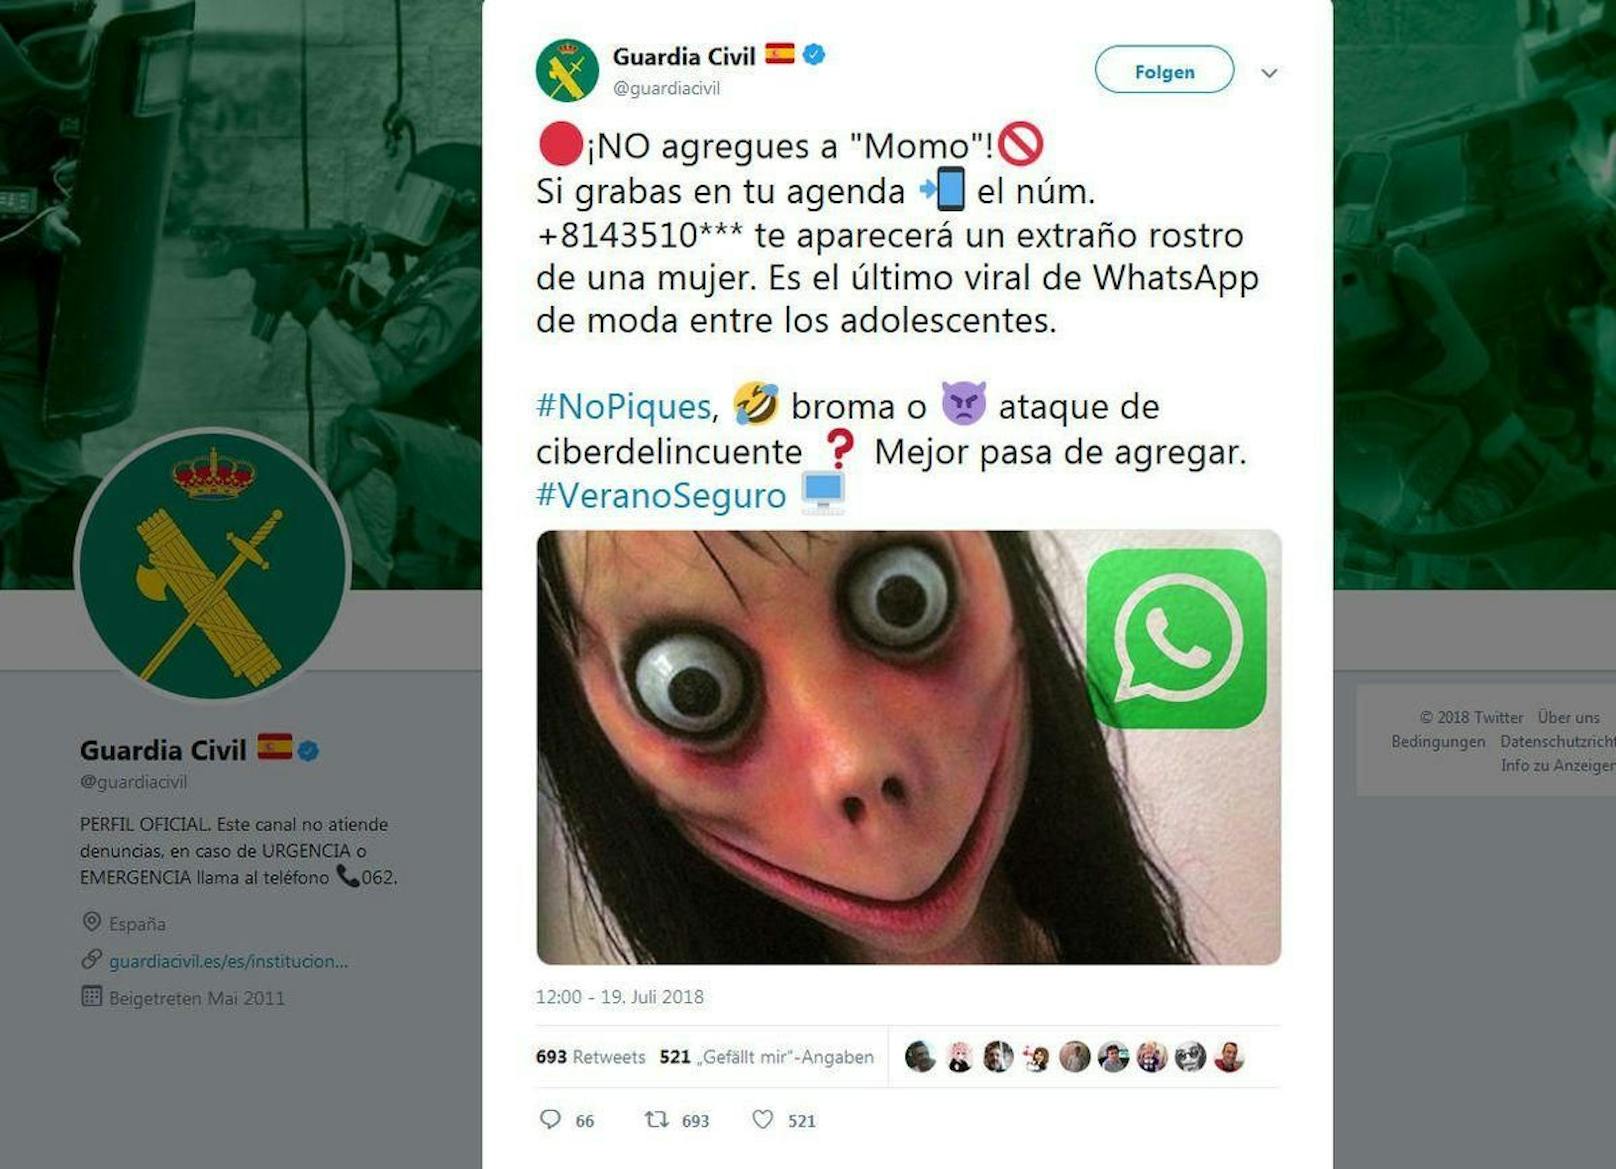 Die spanische Polizei warnte damals davor, dass man die angegebene Nummer nicht bei WhatsApp hinzufügen solle, sonst bekomme man das Gesicht dieser Frau zu sehen. Erst später schwappte das Phänomen auch in die deutsche Sprachregion über.